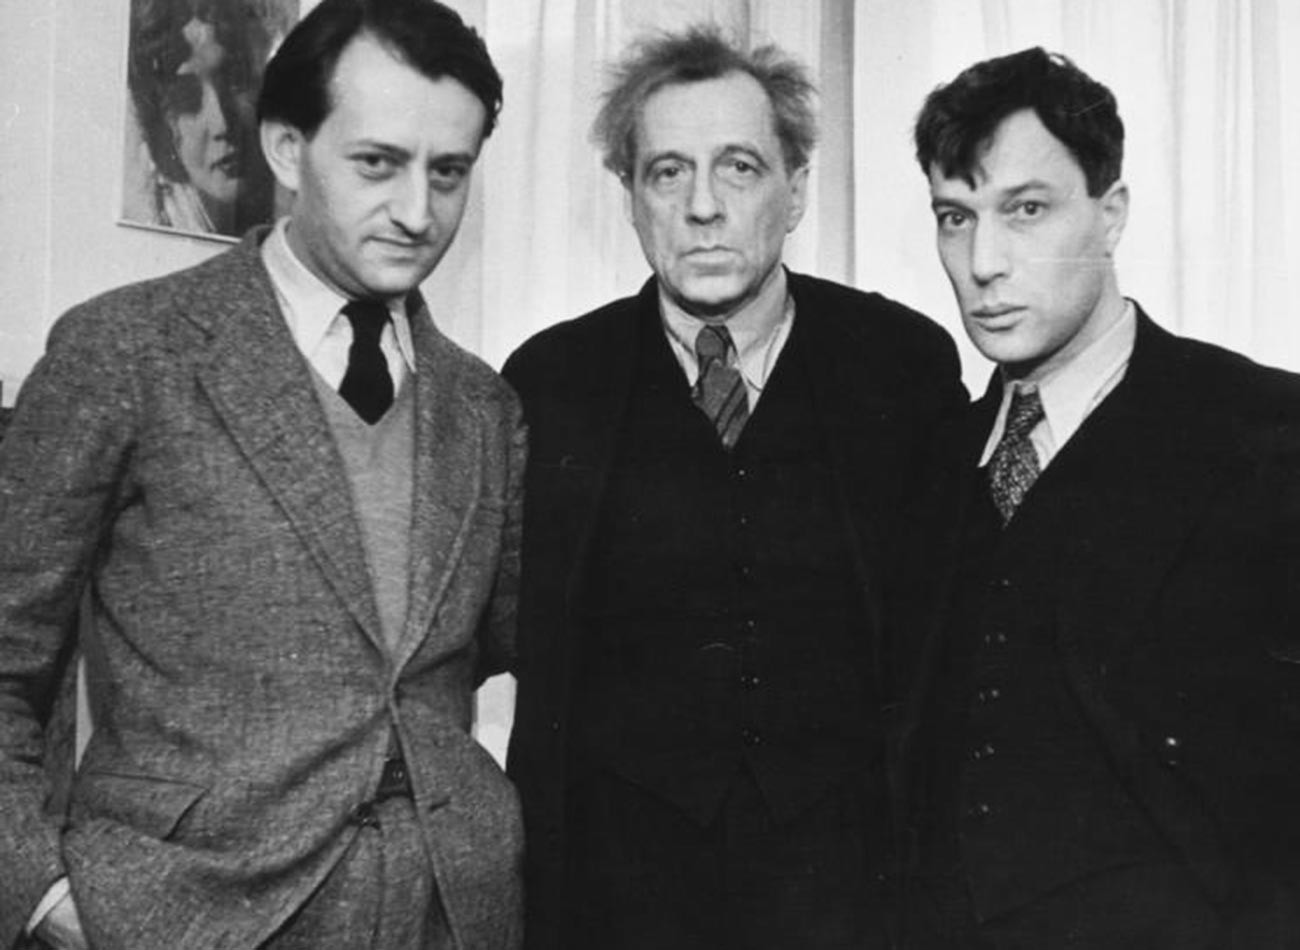 Od leve proti desni: Andre Malraux, Vsevolod Mejerhold, Boris Pasternak

